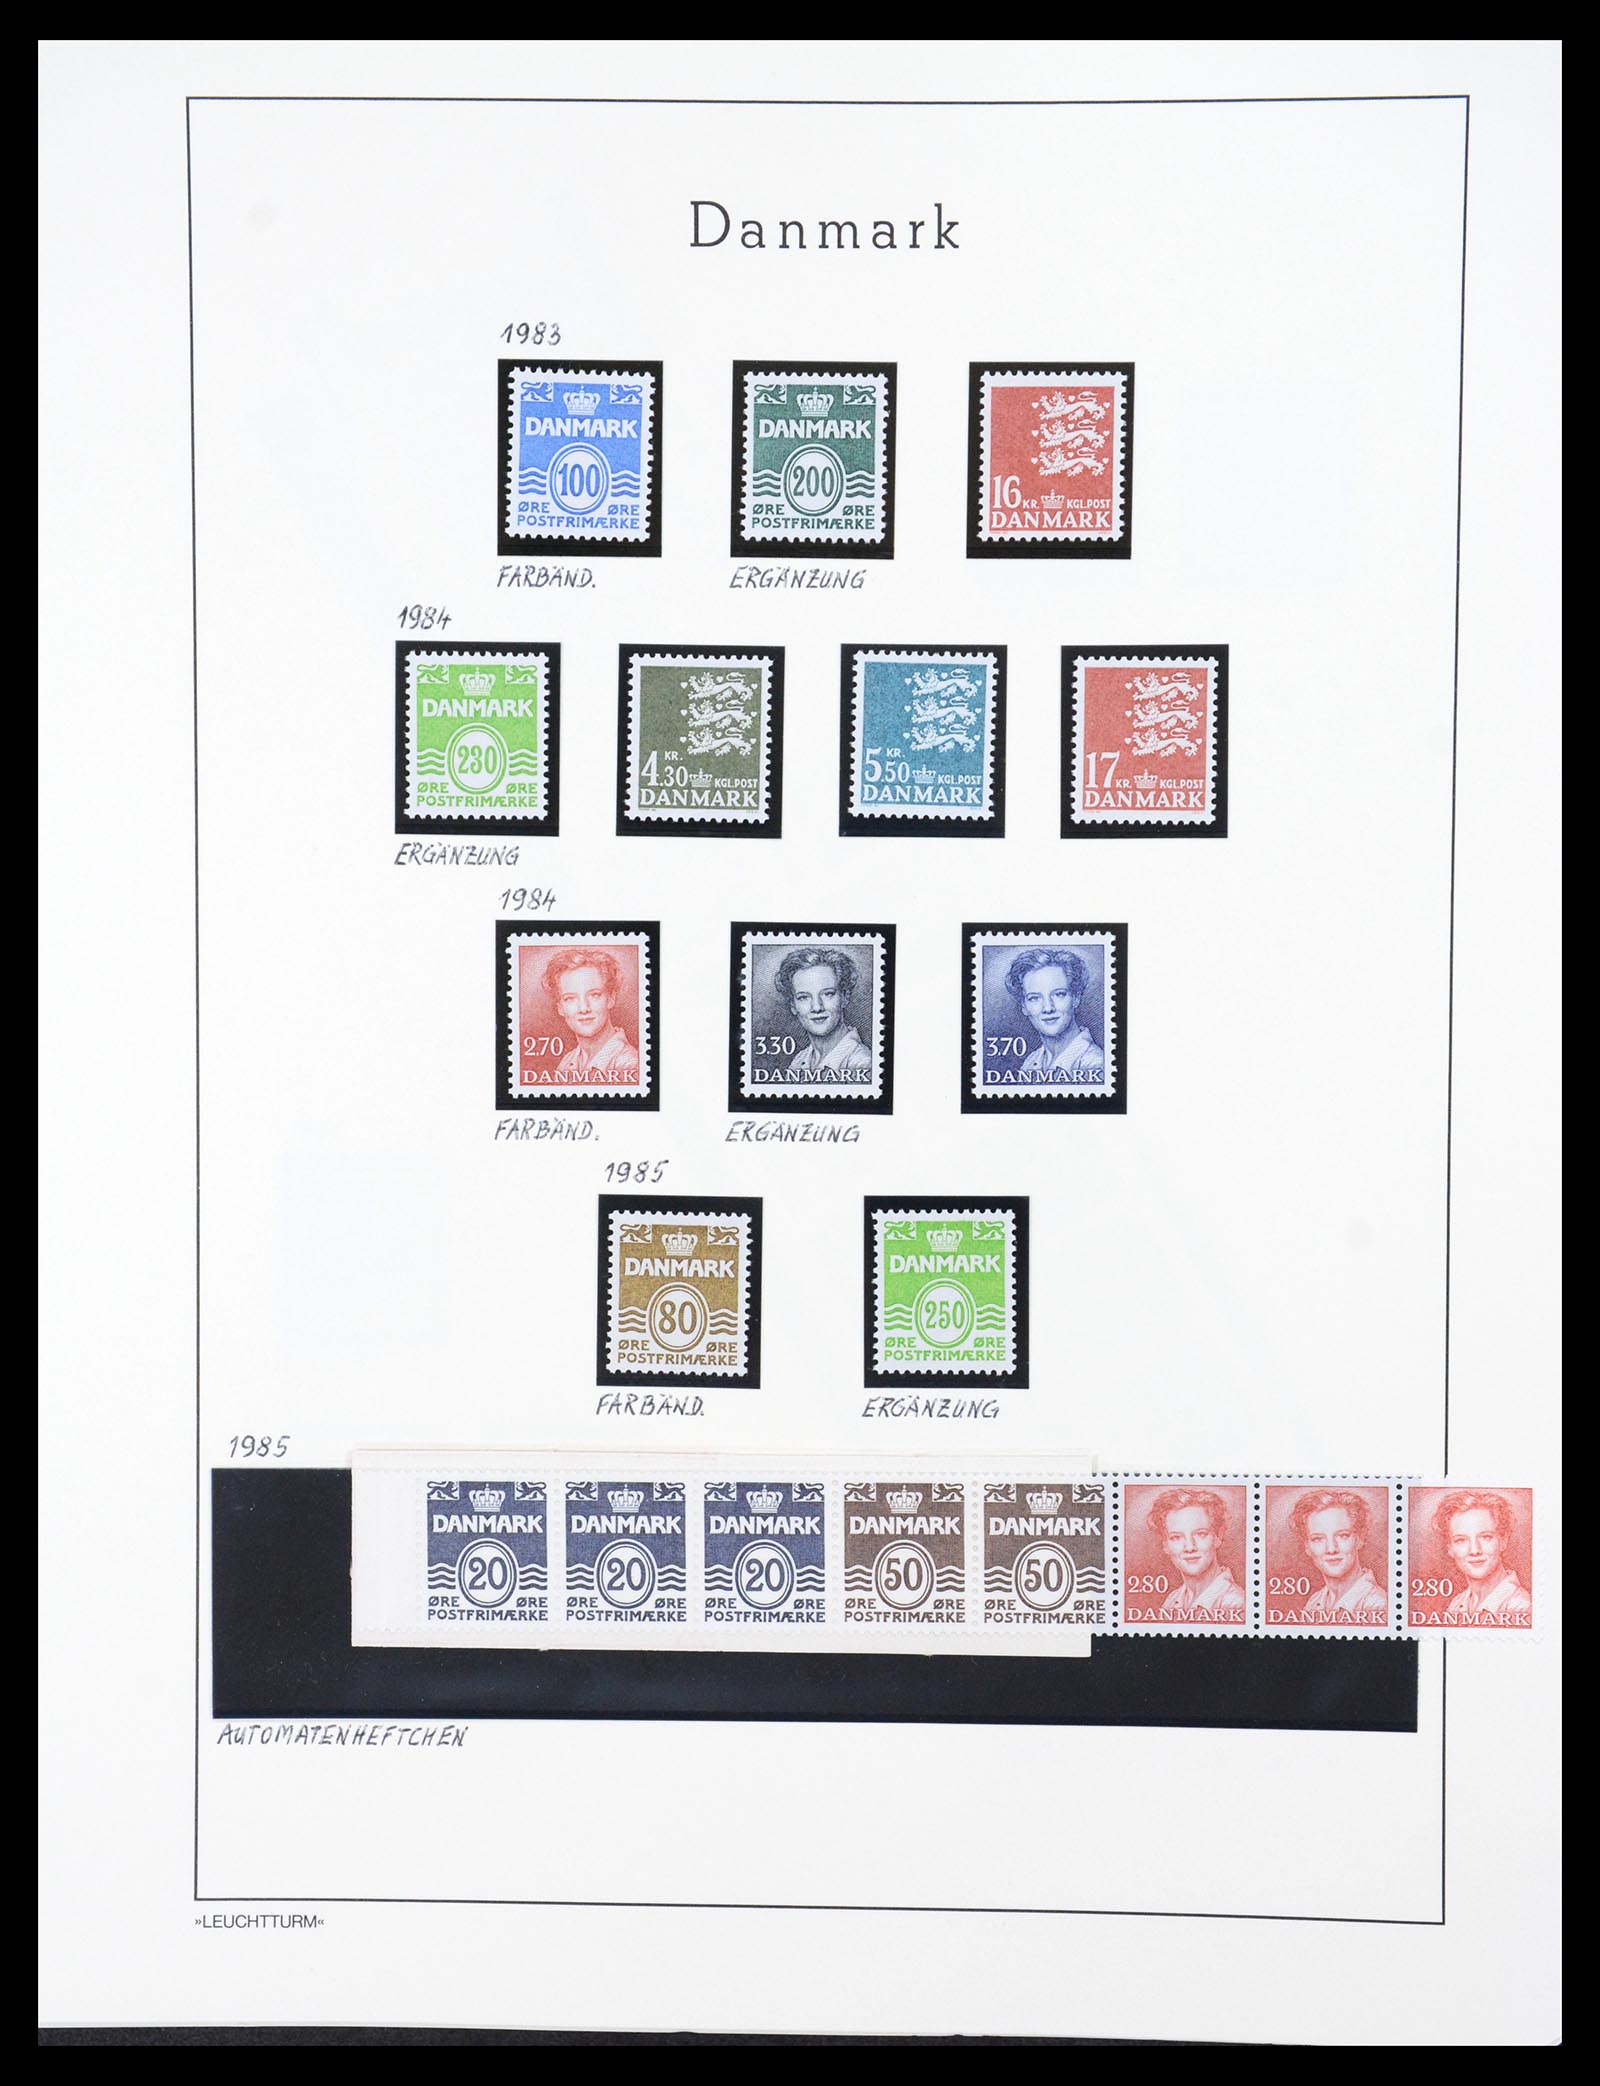 36612 115 - Stamp collection 36612 Denemarken 1851-1990.